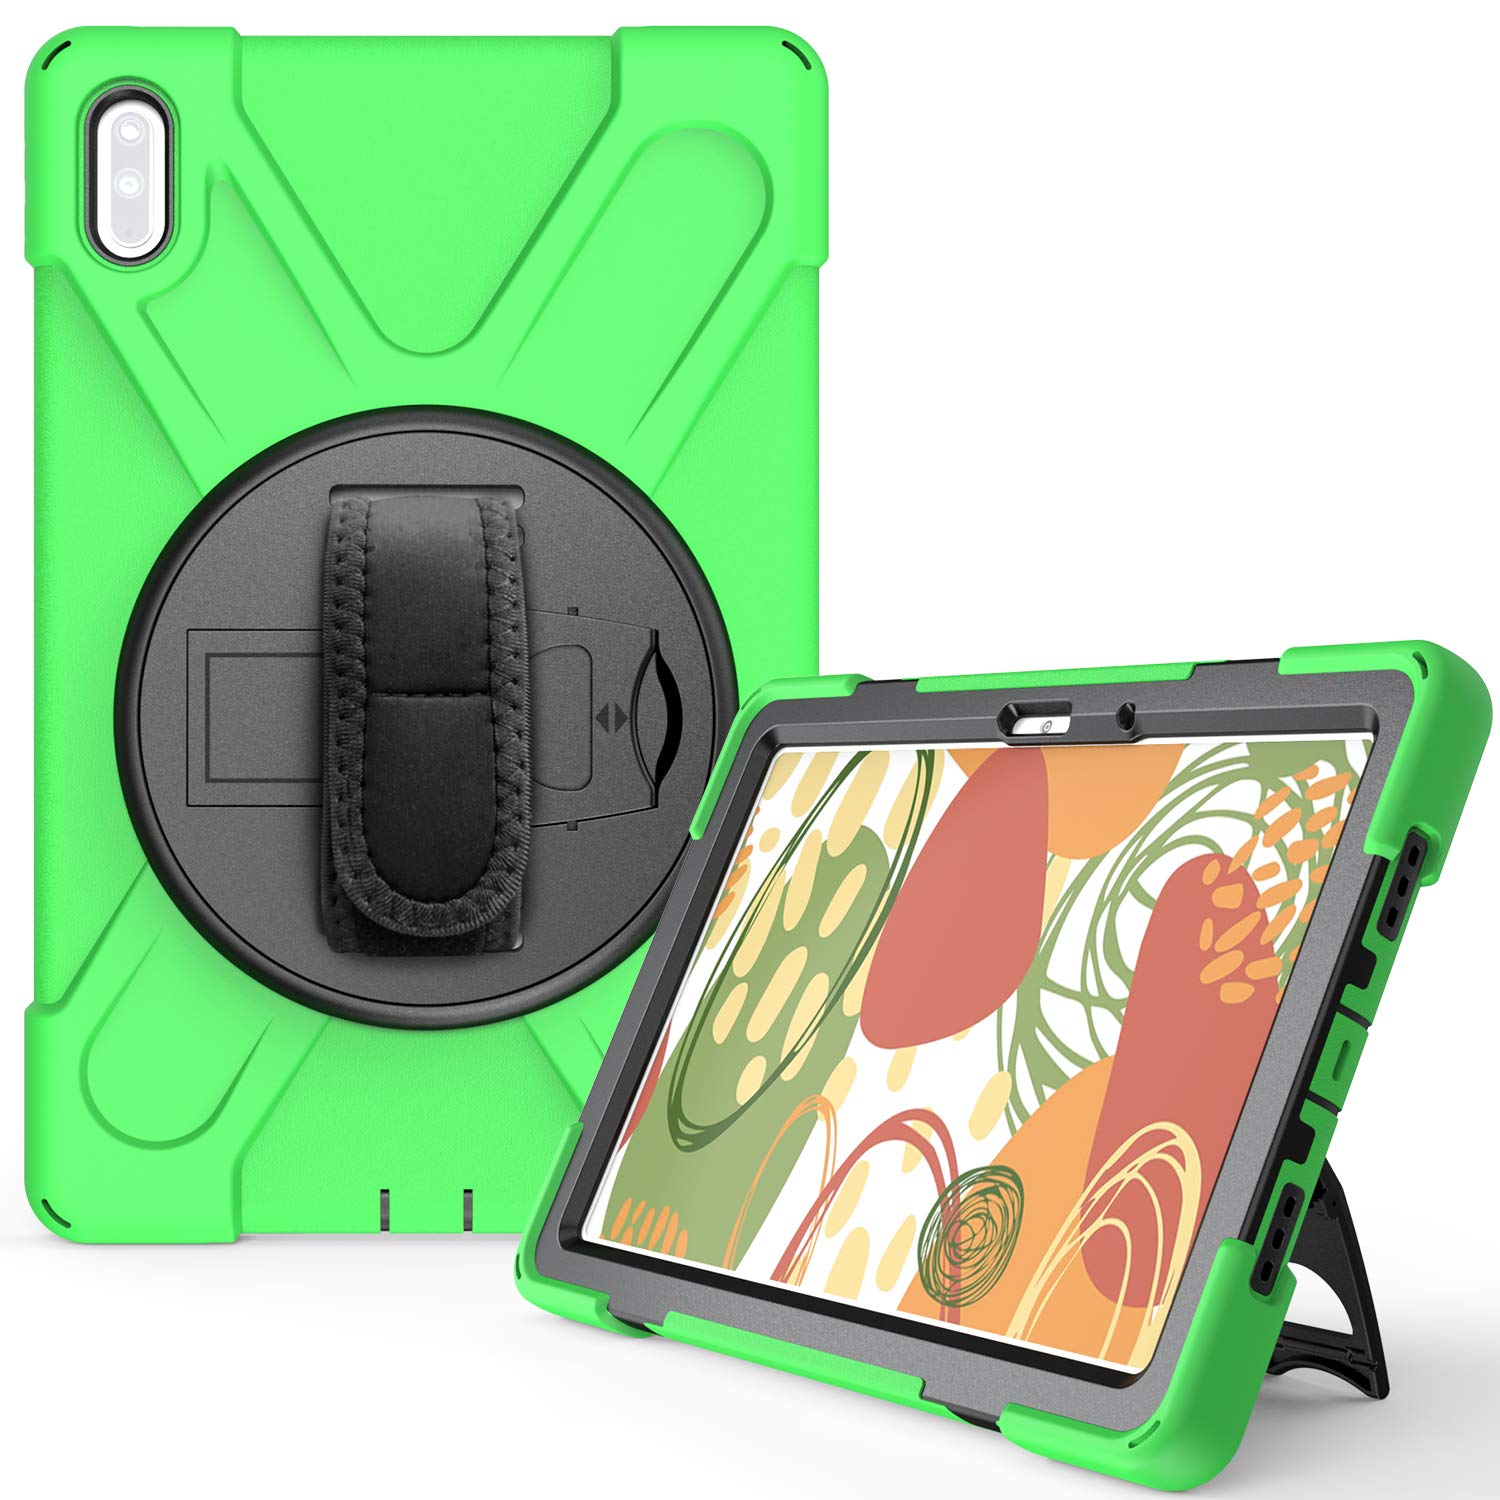 YGoal Hülle für Huawei MatePad 10.4 - [Handschlaufe] [Schultergurt] Robuste Schutzhülle mit Fallschutz Case Cover für Huawei MatePad 10.4 Zoll, Grün